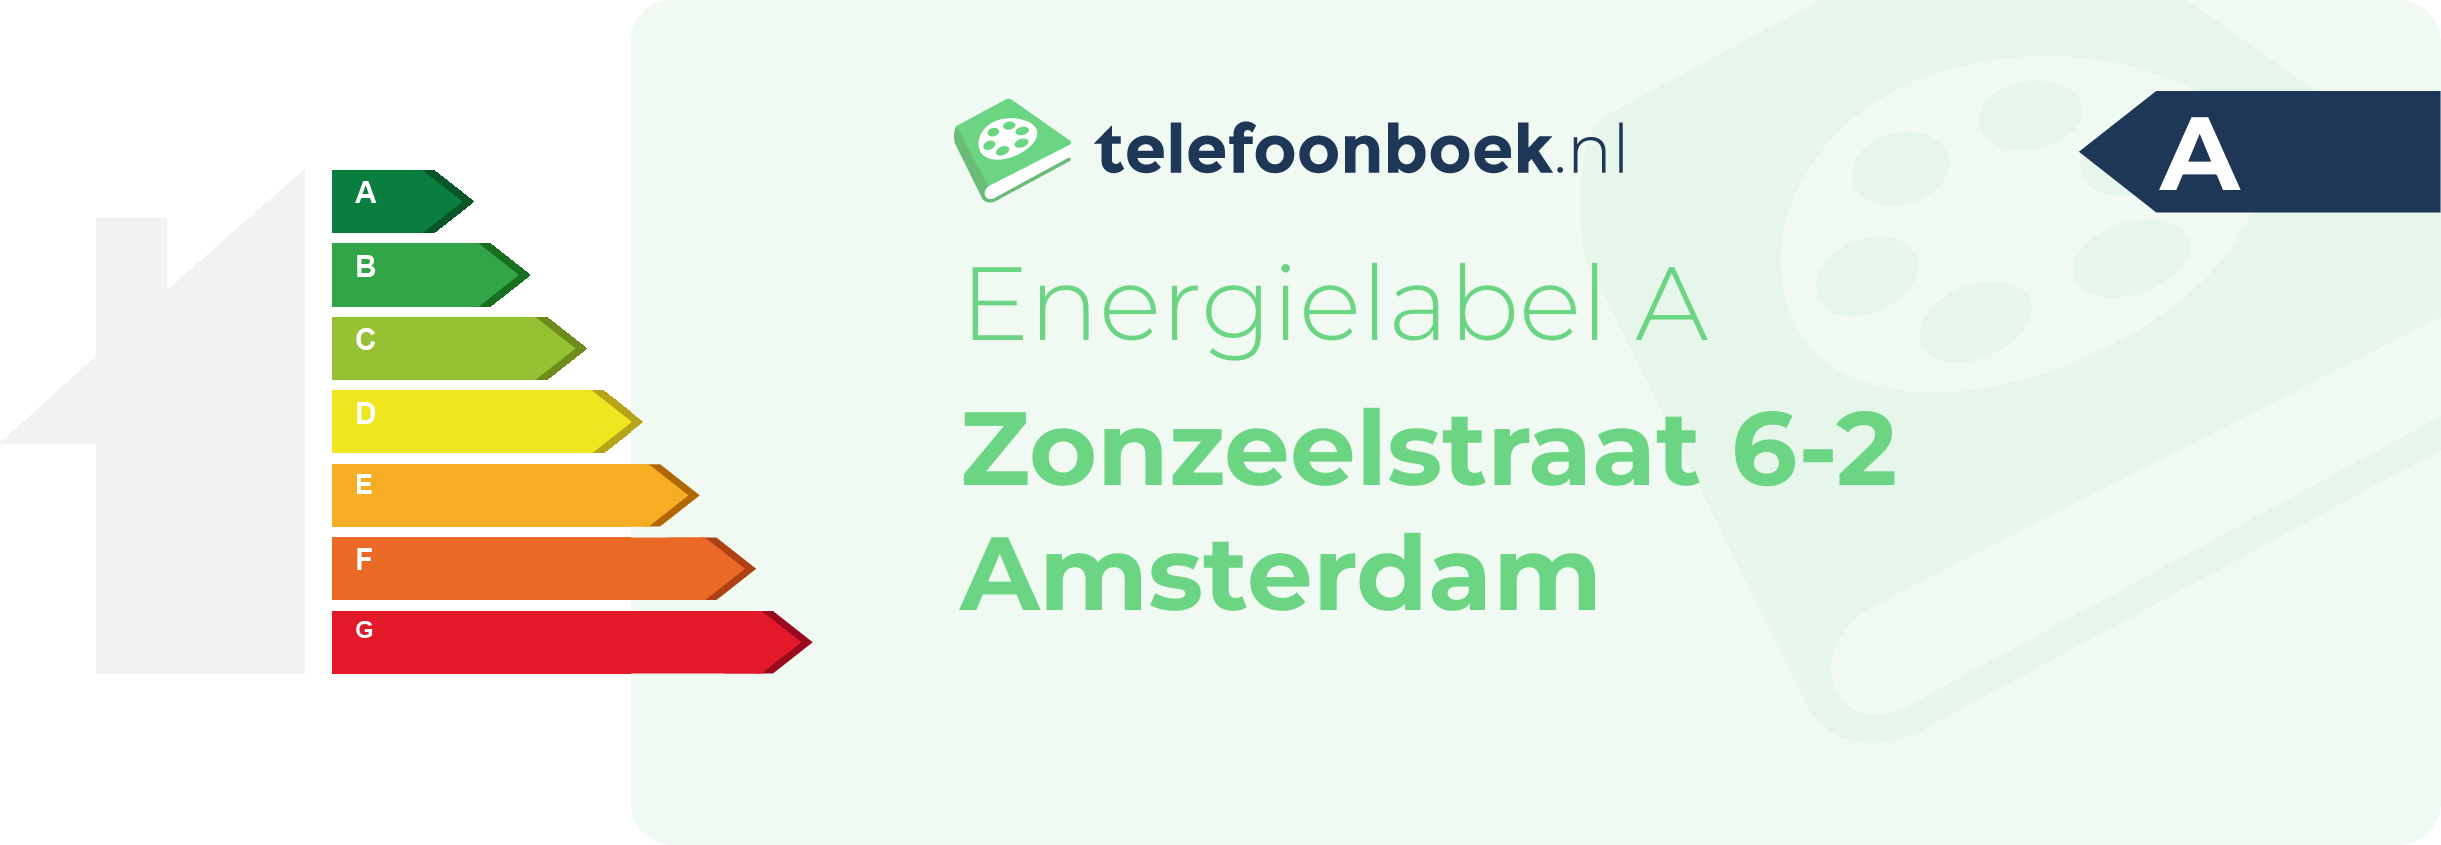 Energielabel Zonzeelstraat 6-2 Amsterdam